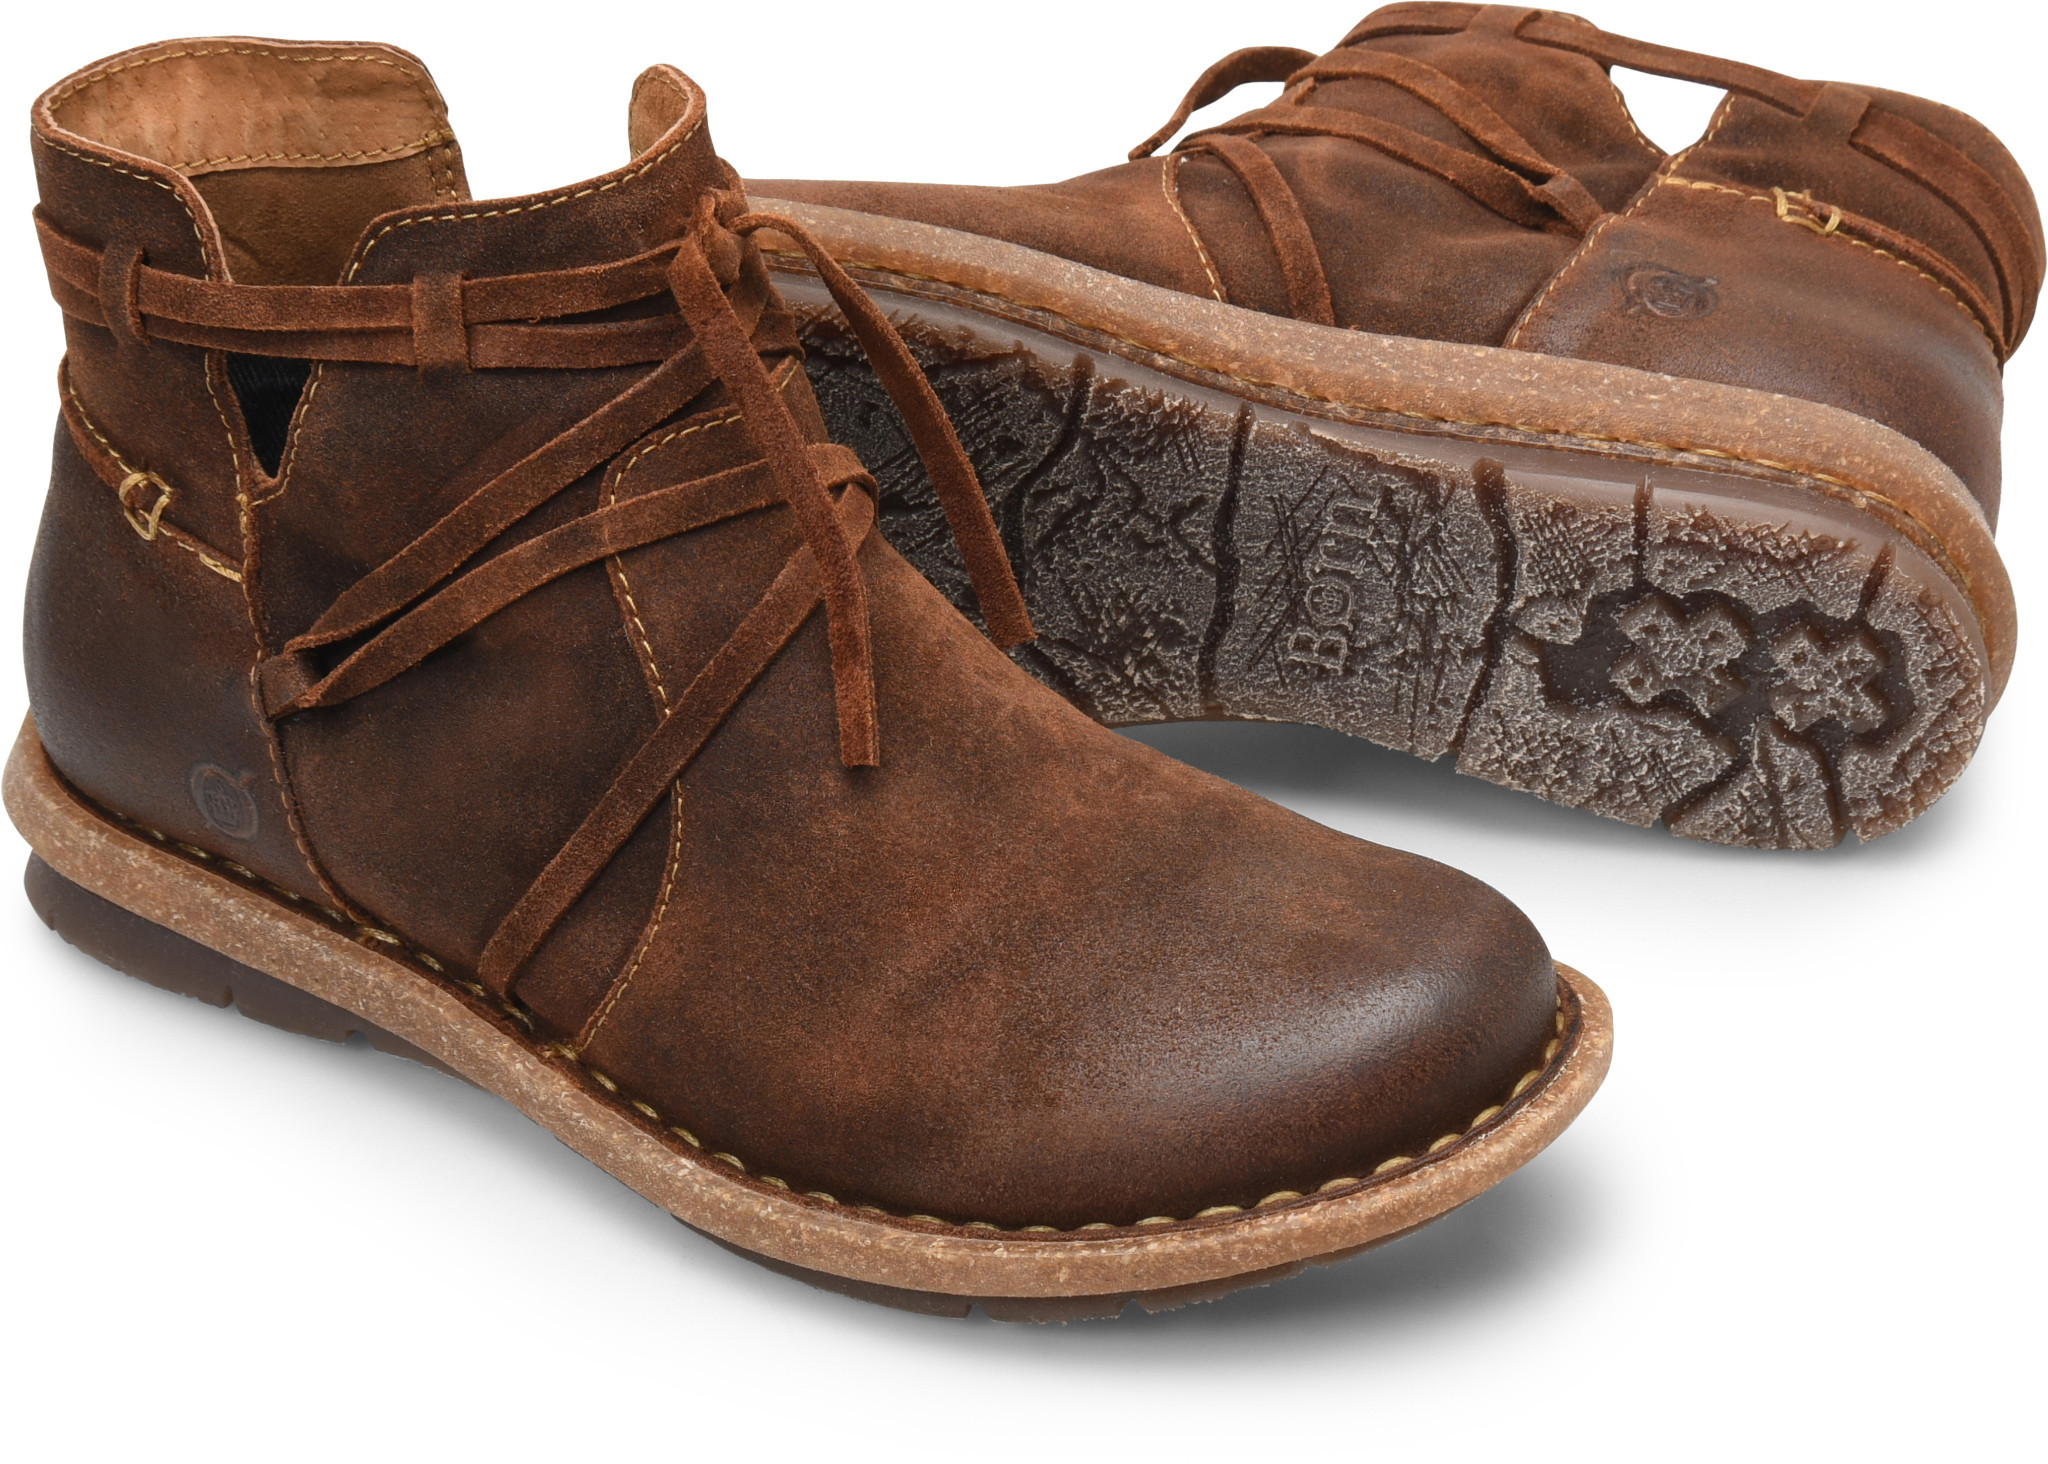 Felmini boots discount 55% Brown 38                  EU WOMEN FASHION Footwear Country 